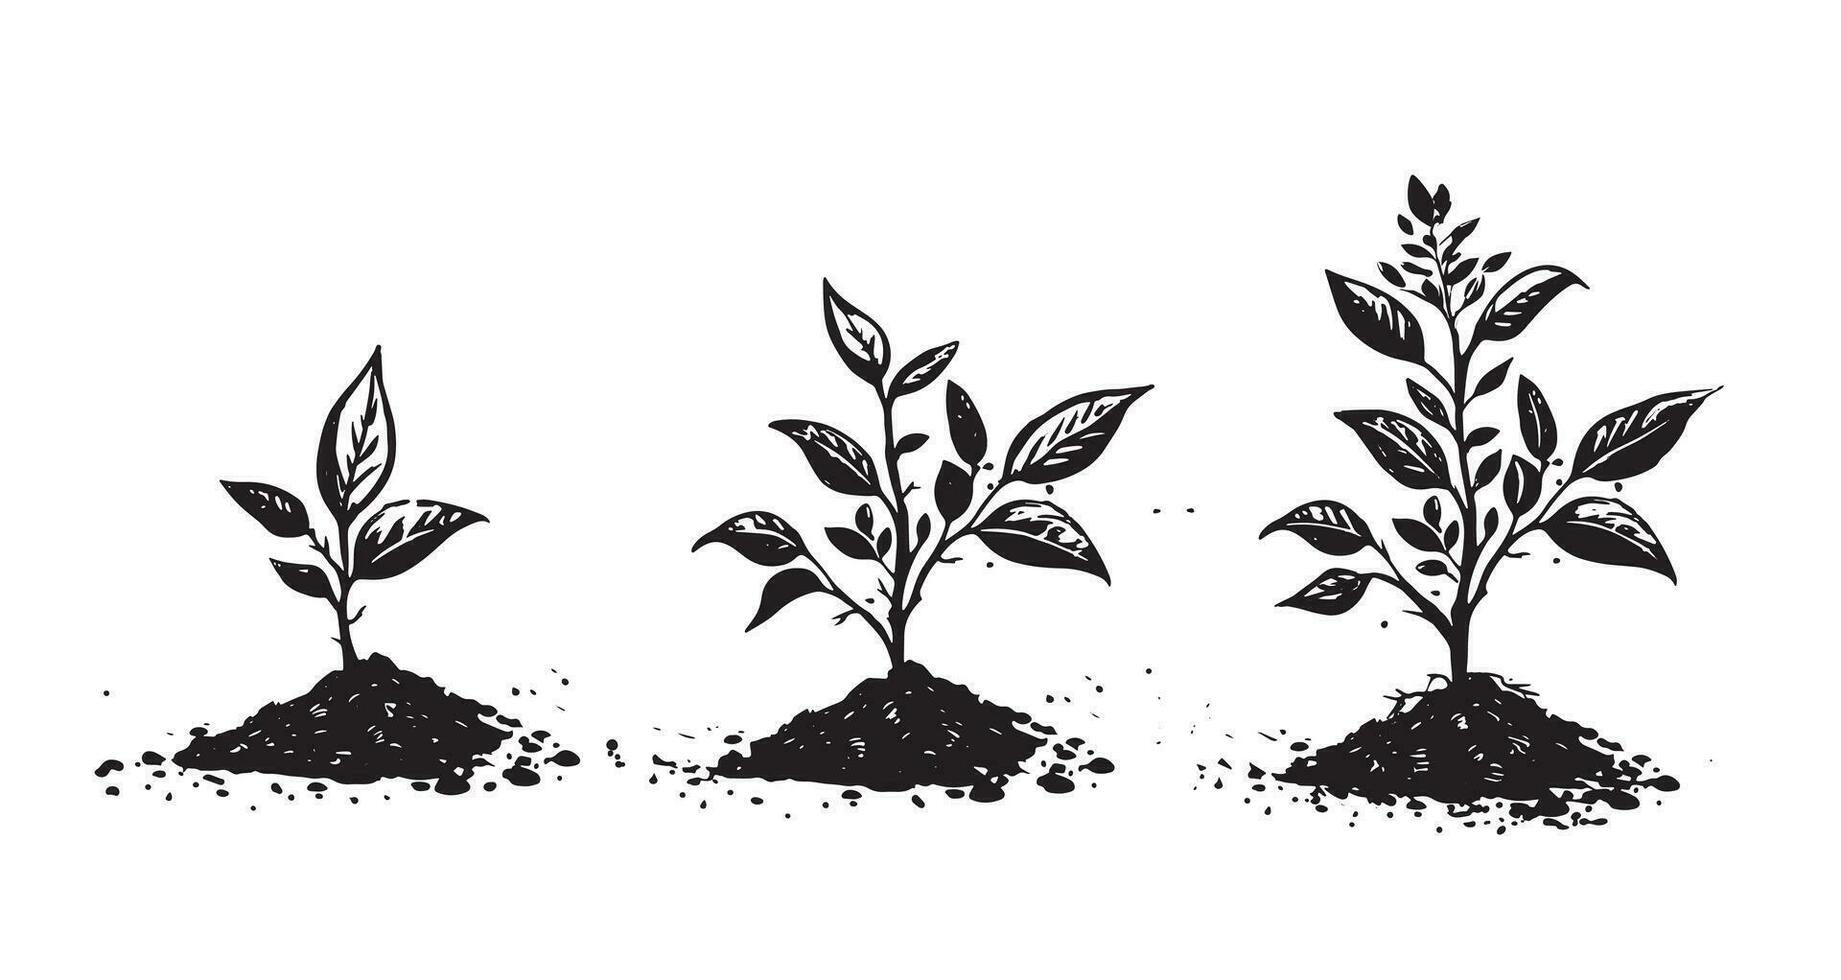 gradual árbol crecimiento en el suelo, mano dibujado ilustraciones, vector. vector